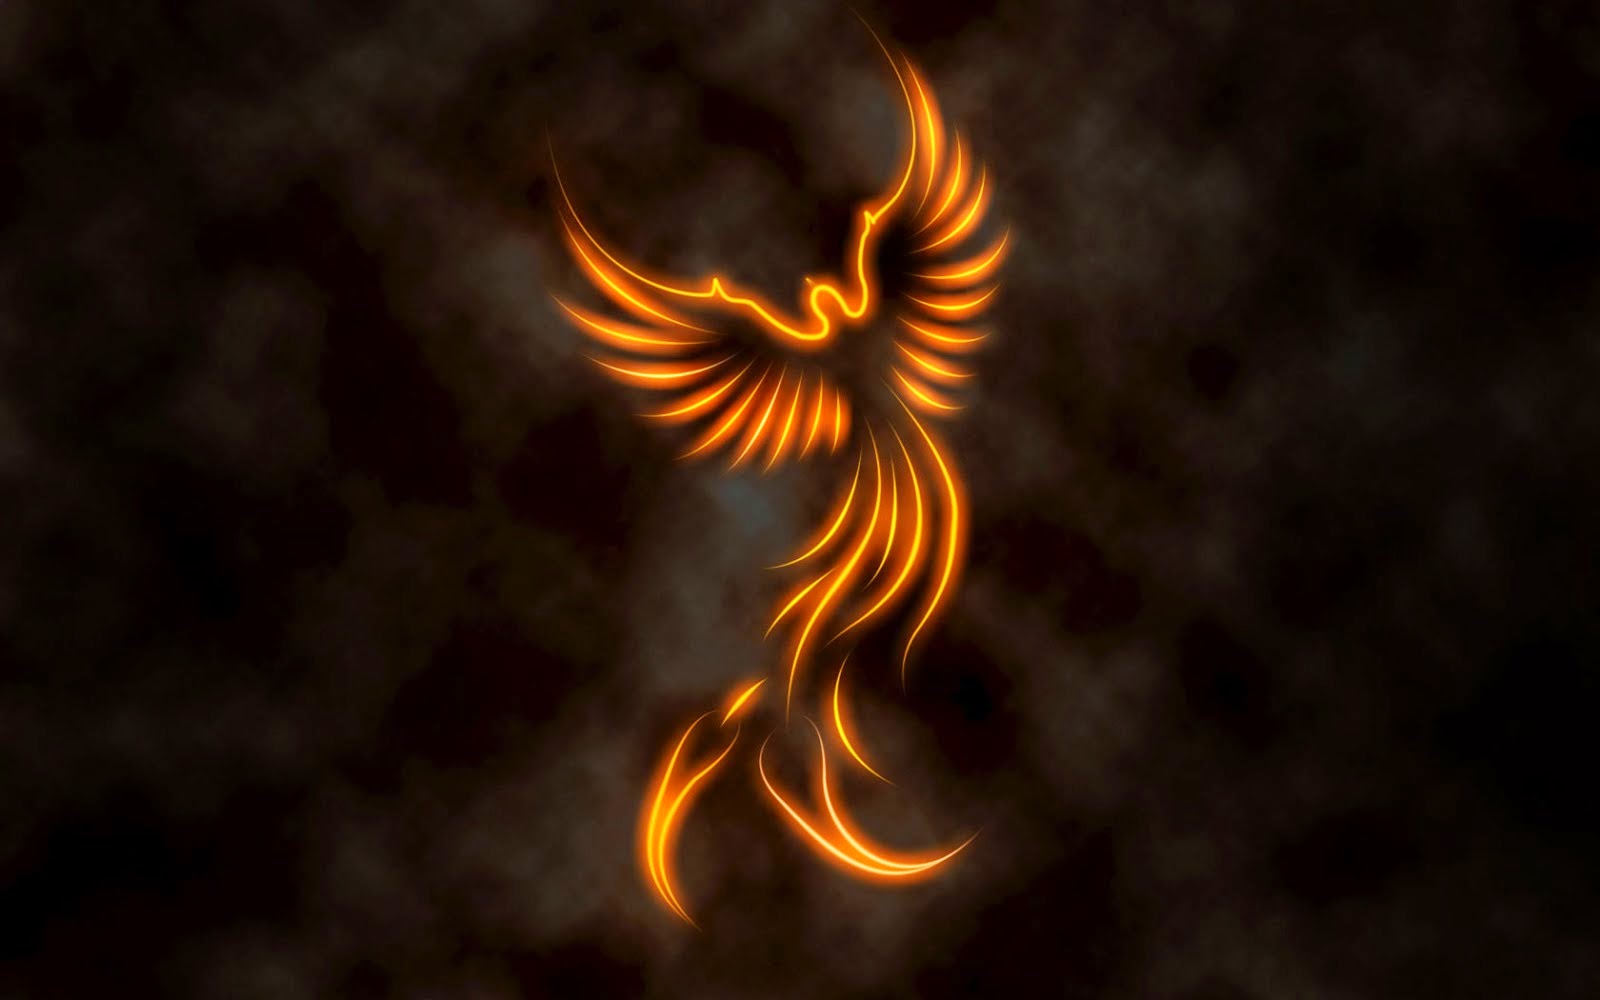 the late phoenix rises